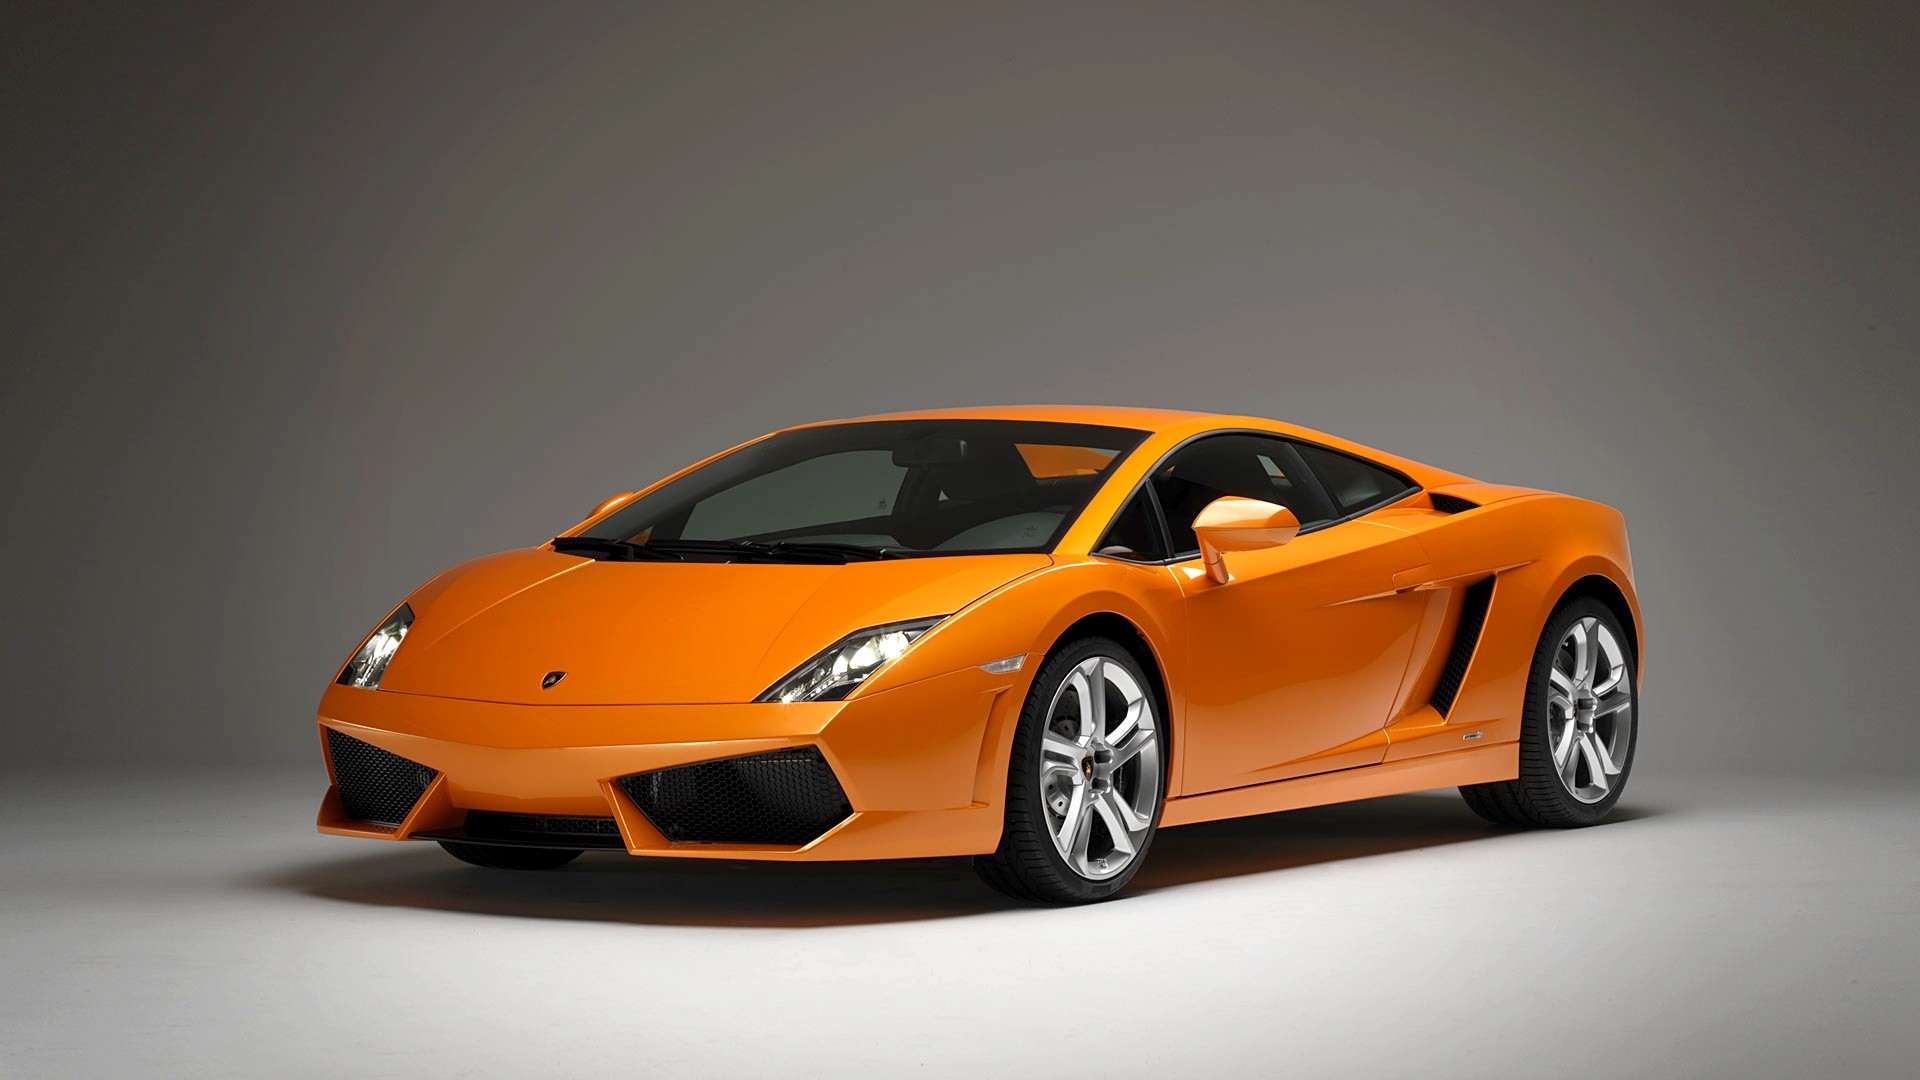 Lamborghini, Lamborghini Gallardo, Orange cars, Car, Vehicle Wallpaper